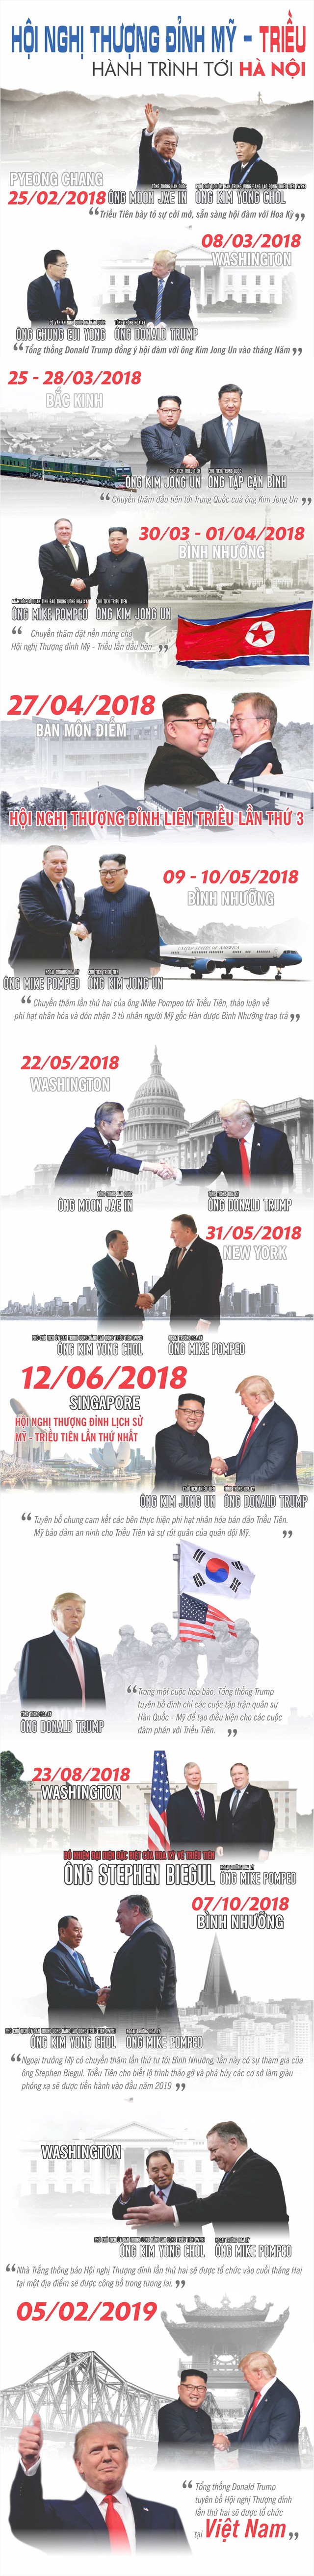 Infographics: Hành trình Thượng đỉnh Mỹ-Triều Tiên lần 2 tới Hà Nội - Ảnh 1.